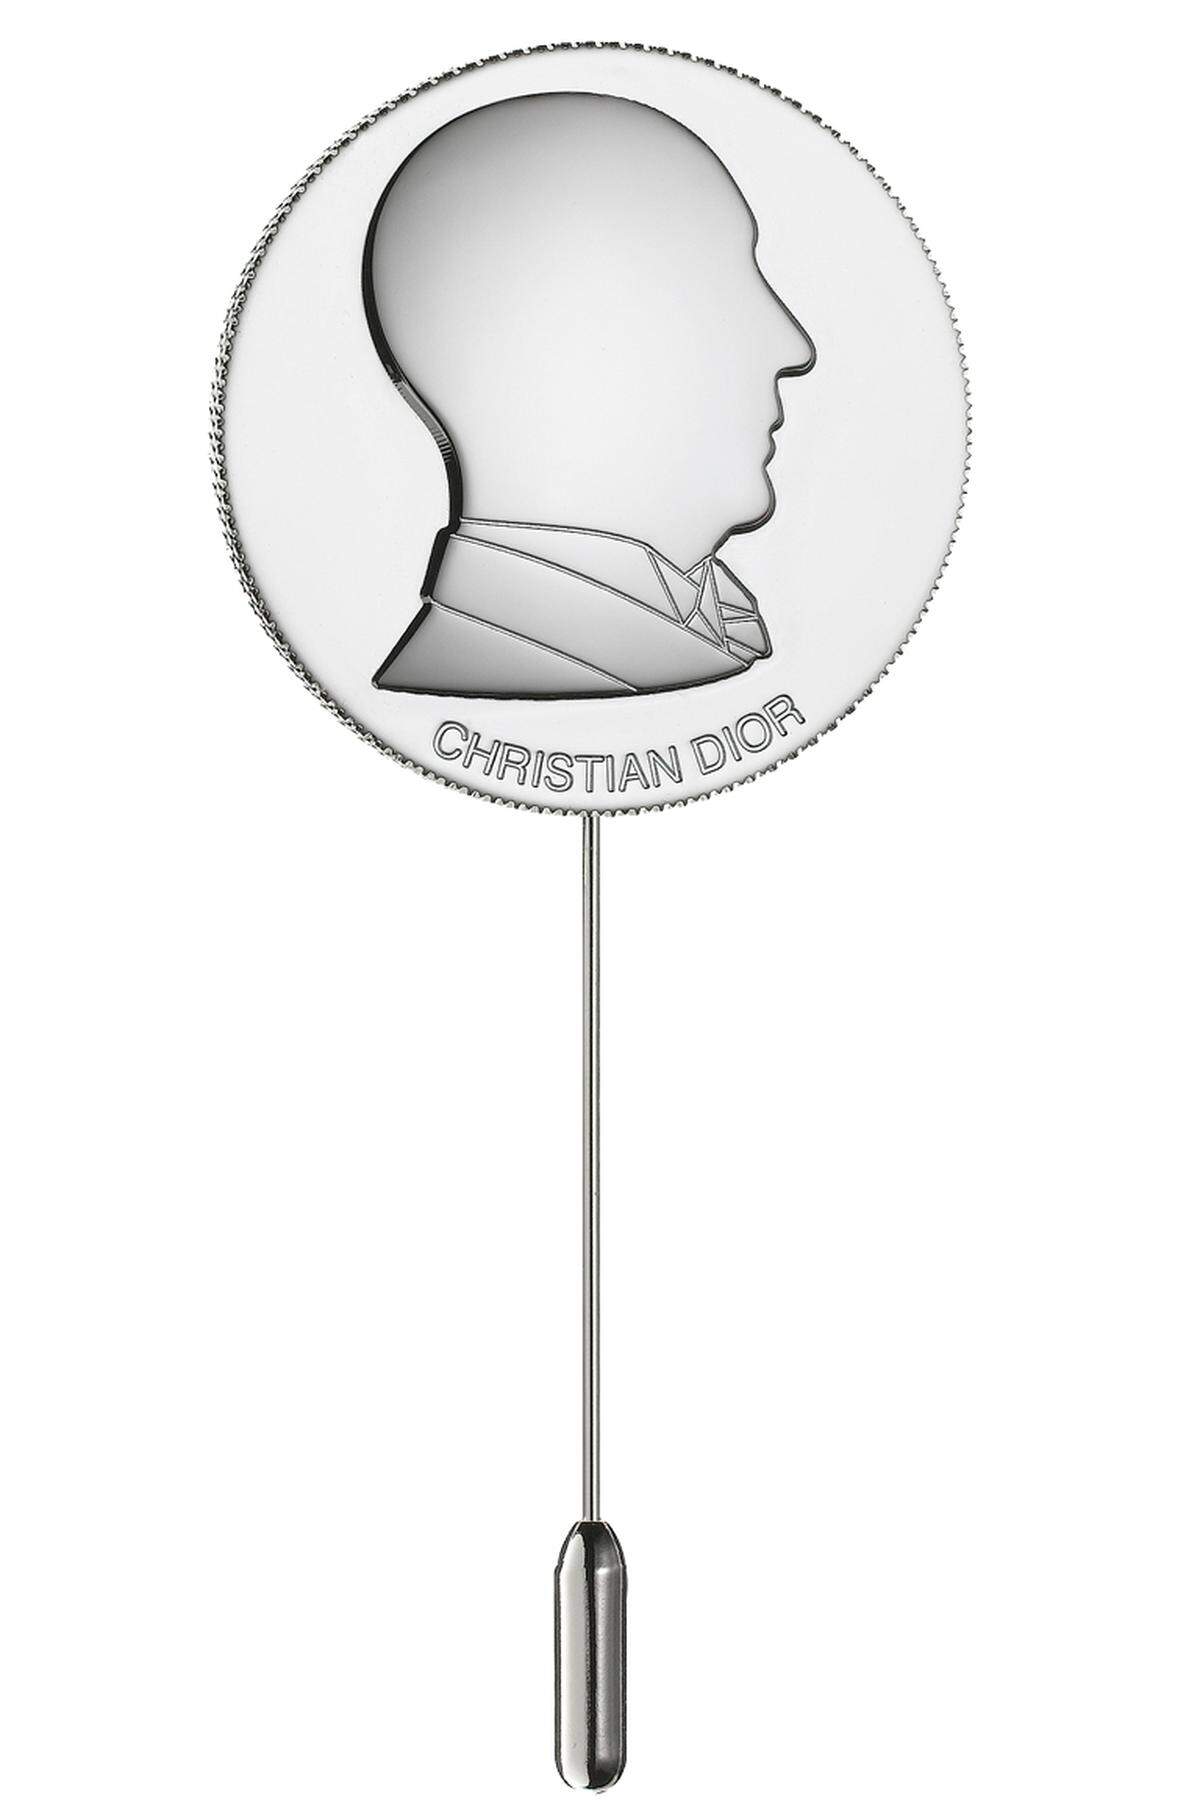 ... von Christian Dior, Preis auf Anfrage, www.dior.com